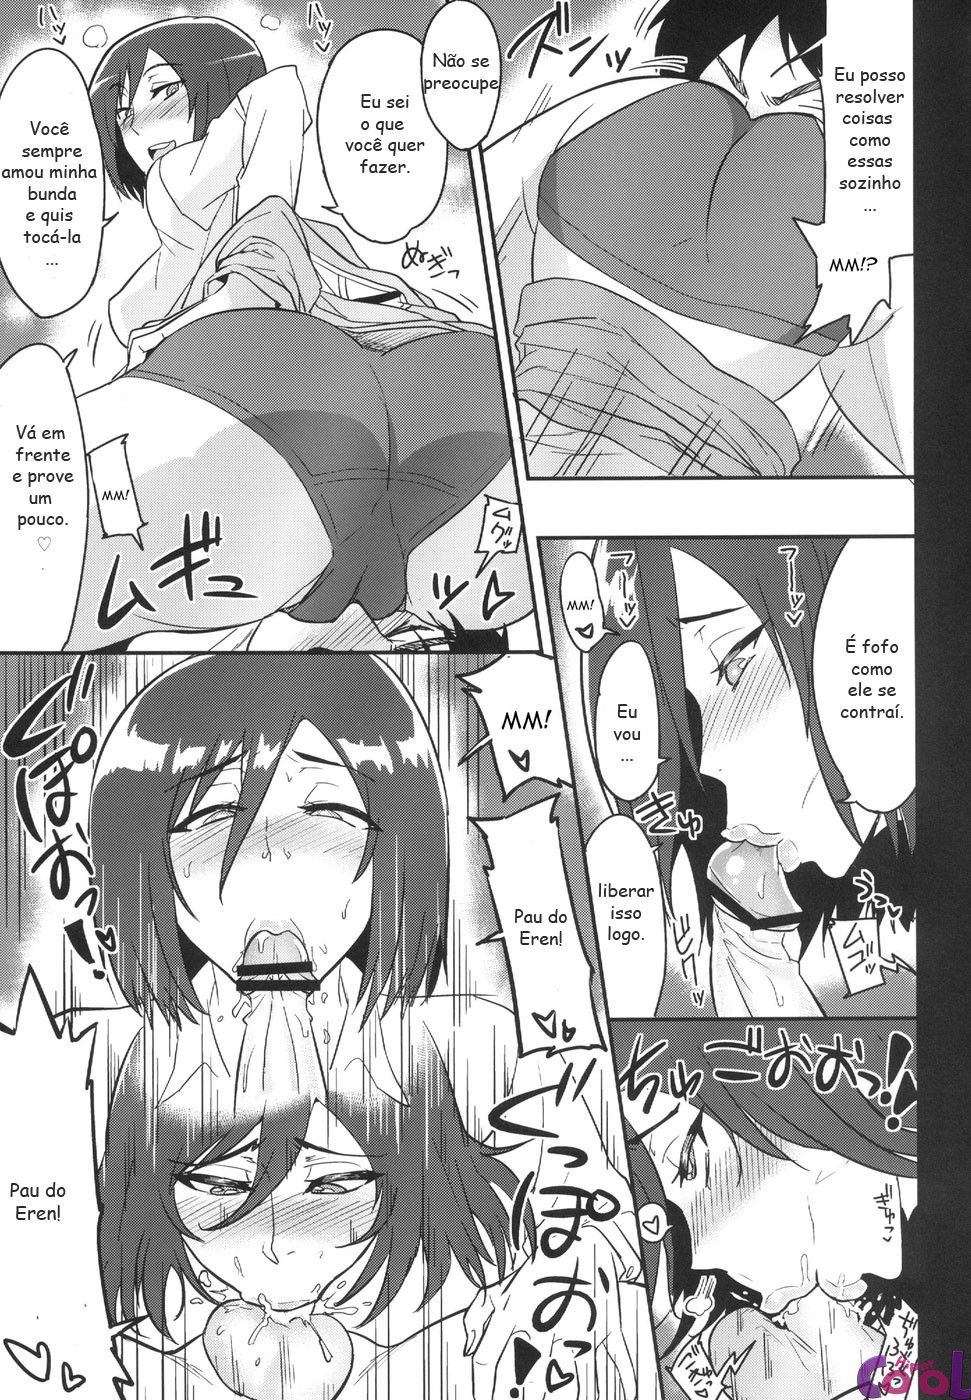 Eren quer gozar na buceta de Mikasa